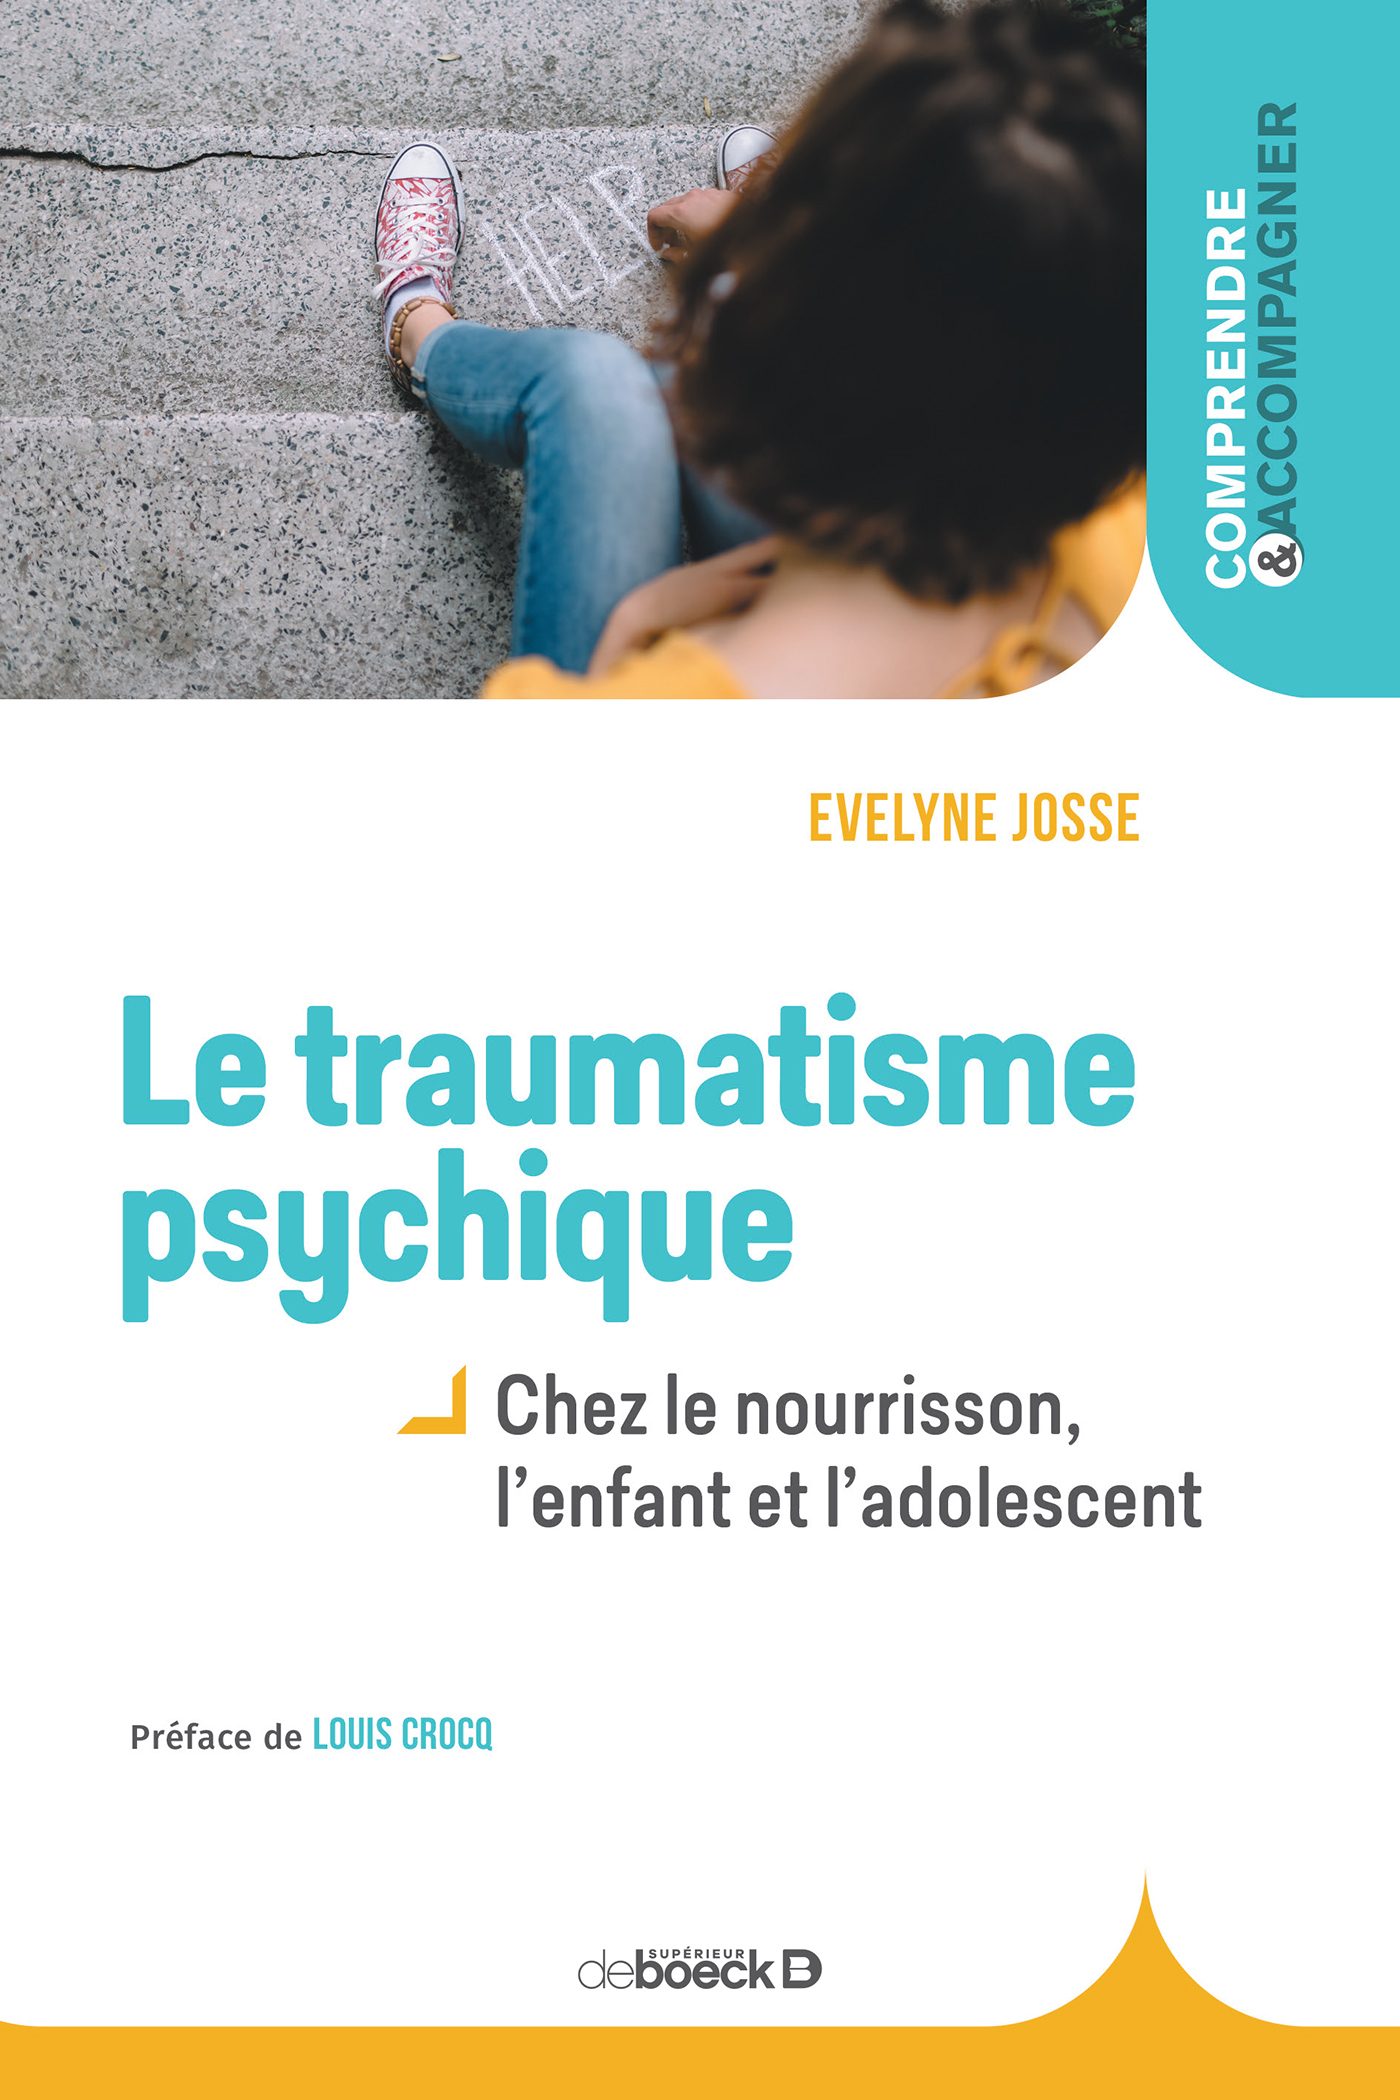 Le traumatisme psychique chez l'enfant, Chez le nourrisson, l'enfant et l'adolescent (9782807307834-front-cover)